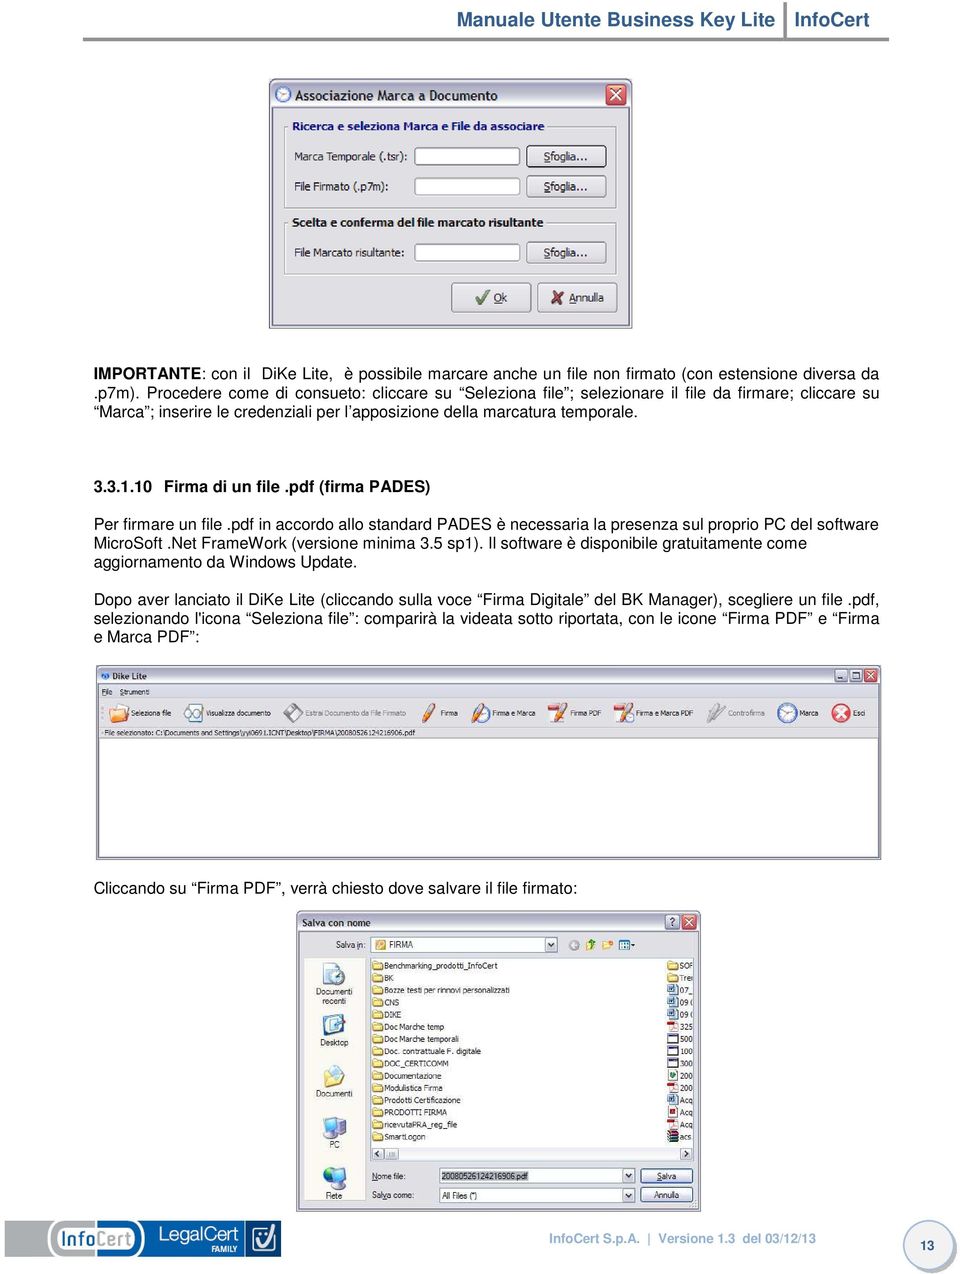 10 Firma di un file.pdf (firma PADES) Per firmare un file.pdf in accordo allo standard PADES è necessaria la presenza sul proprio PC del software MicroSoft.Net FrameWork (versione minima 3.5 sp1).